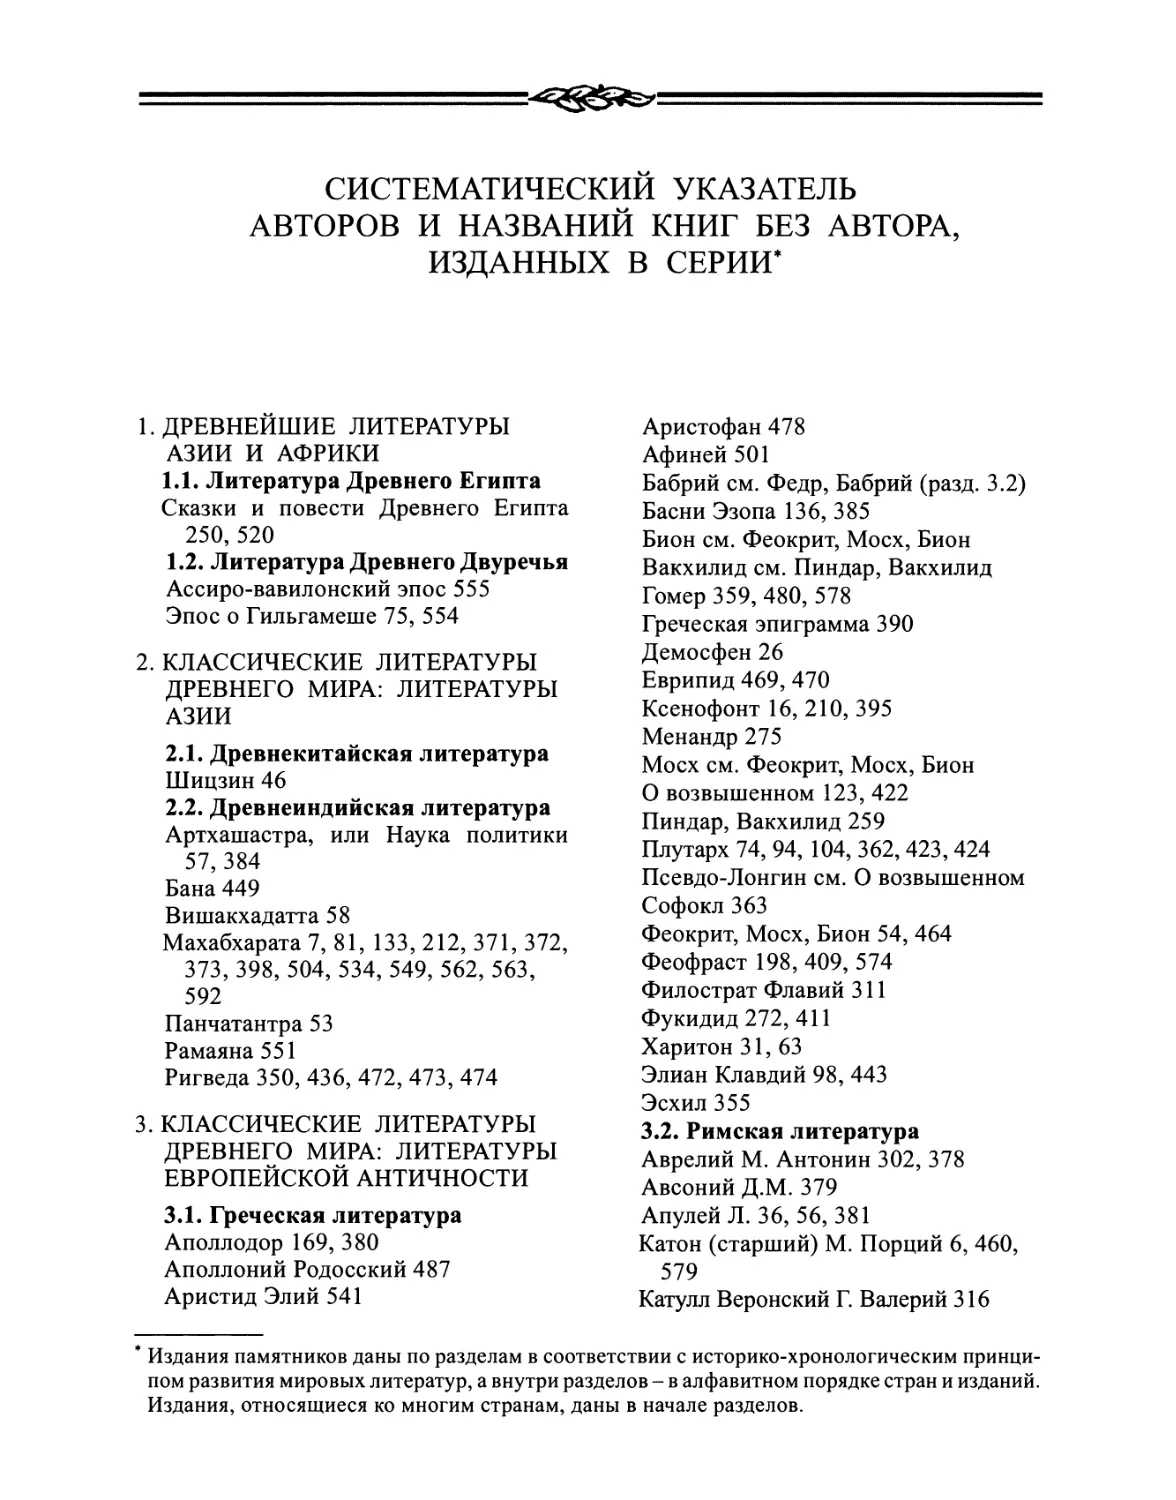 Систематический указатель авторов и названий книг без автора, изданных в серии